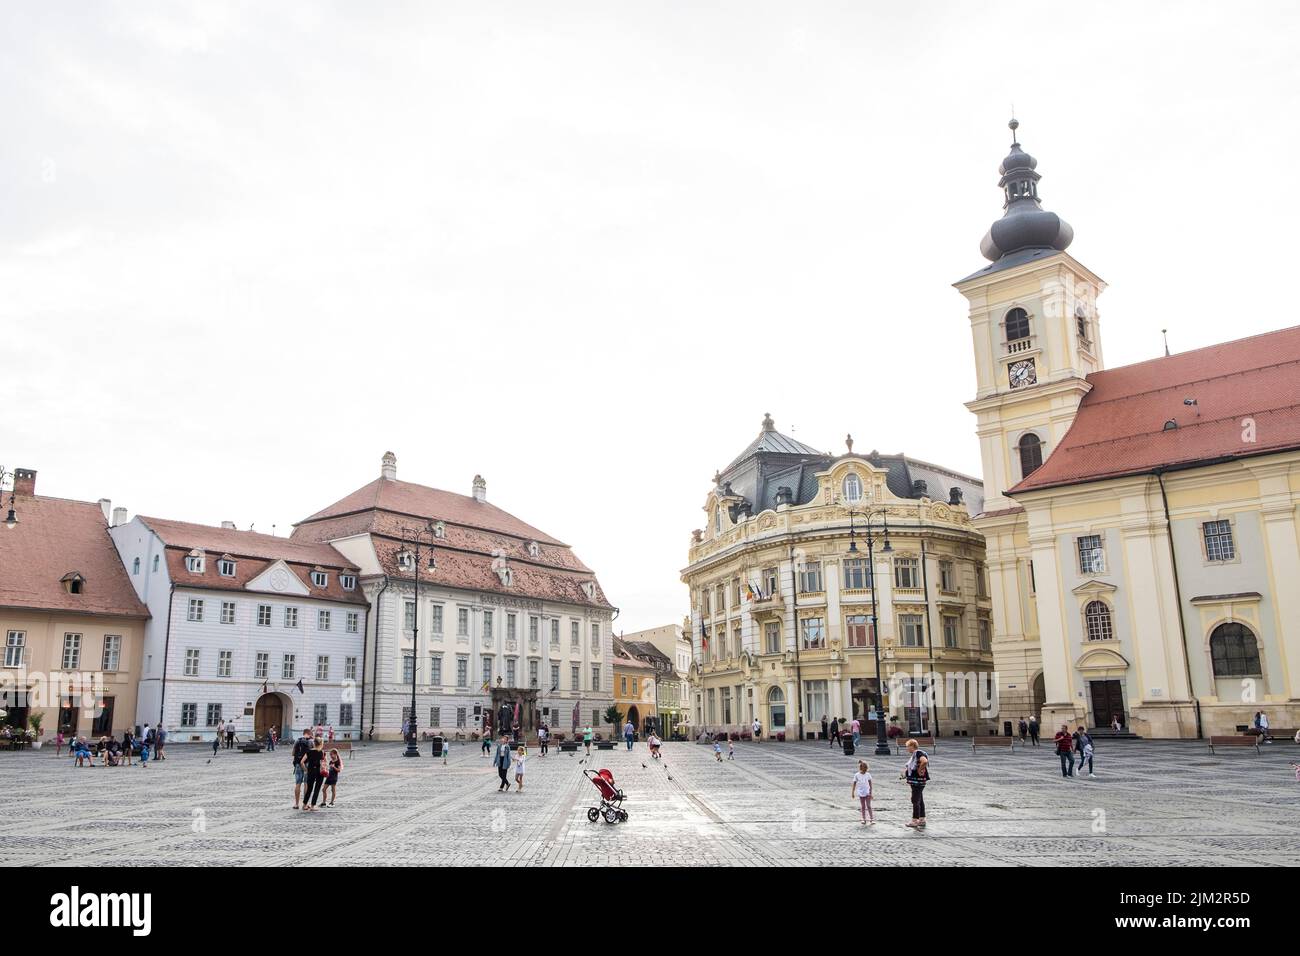 Romania, Transylvania, Sibiu, Piata Mare Square Stock Photo